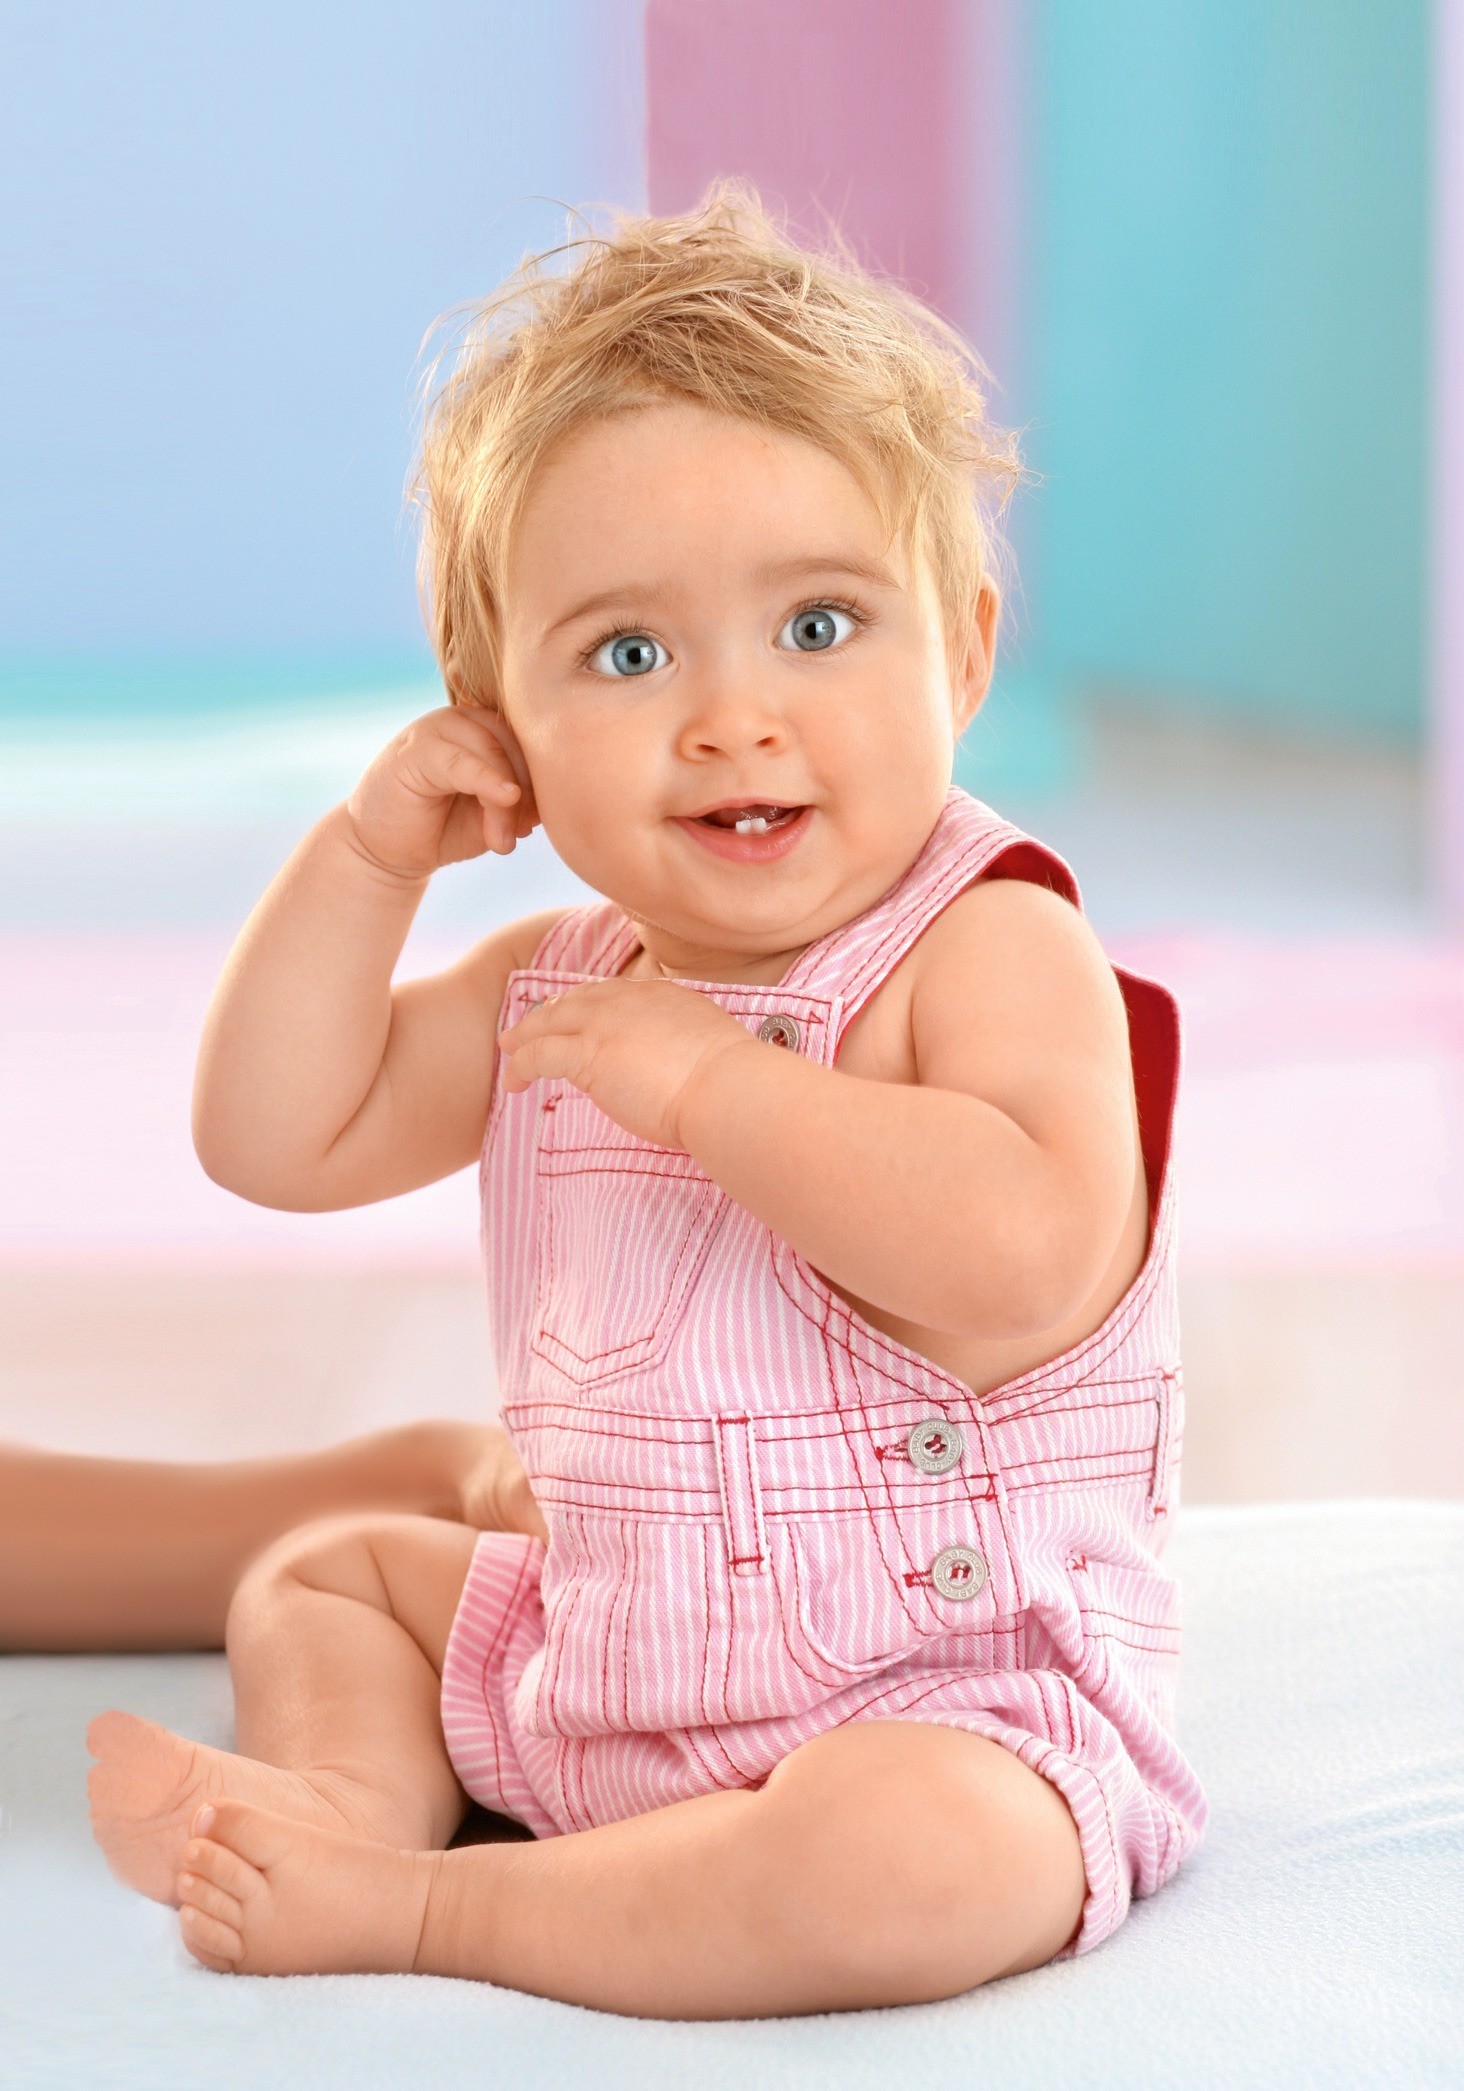 6 признаков, что режутся зубки – как помочь малышу?